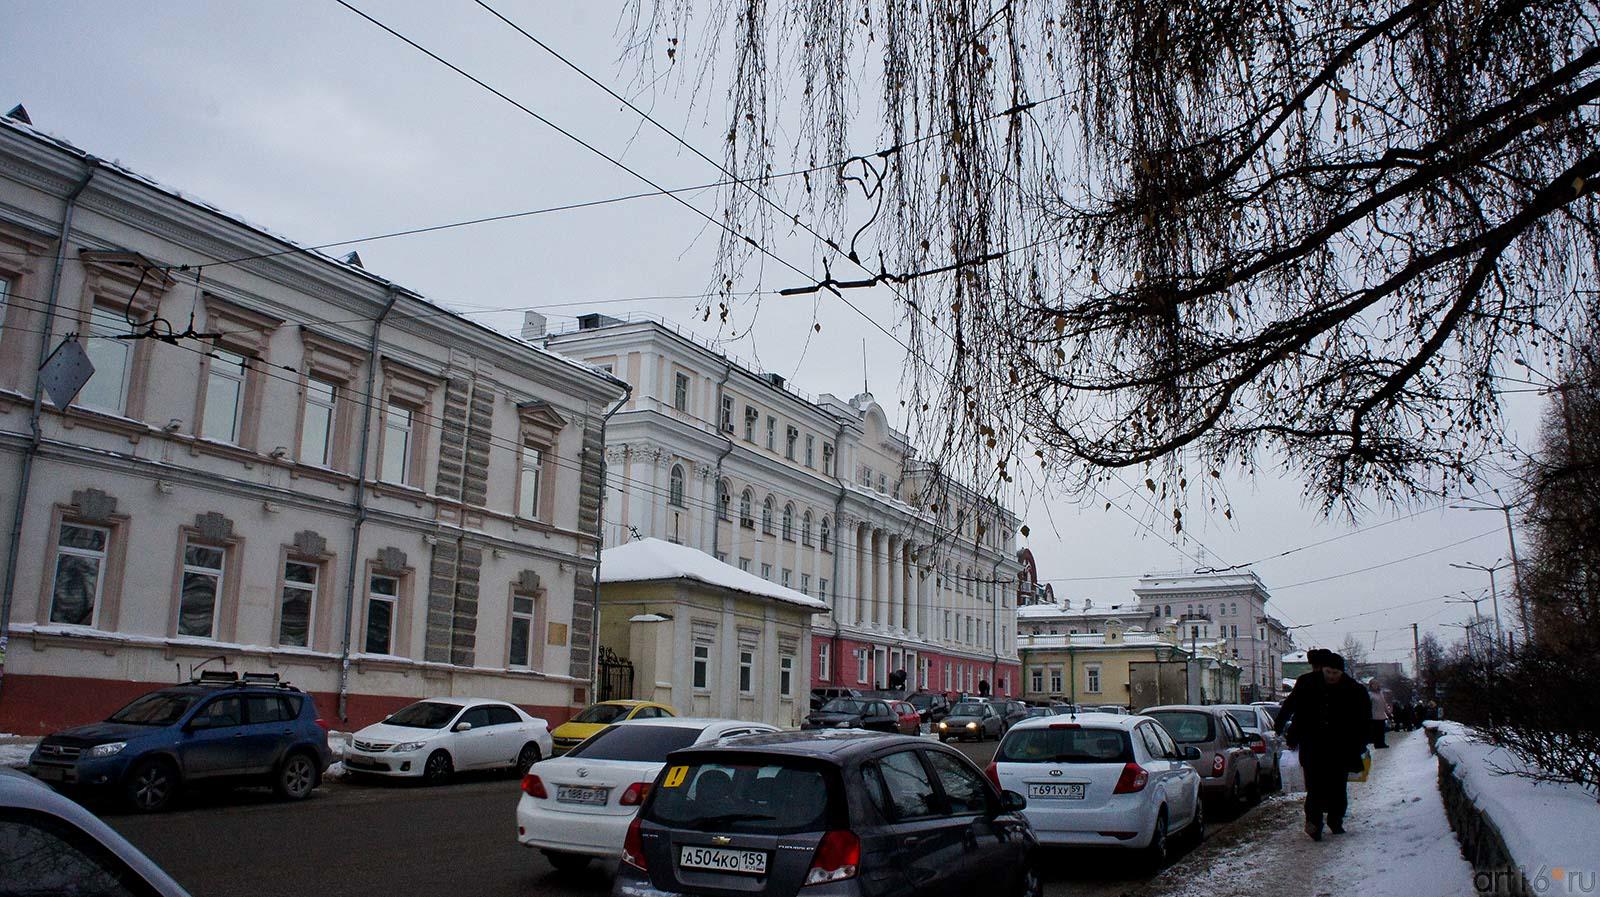 Слева: Дом купца Попова, ул. 25 лет Октября, 1. Пермь, январь 2012::Прогулка по Перми